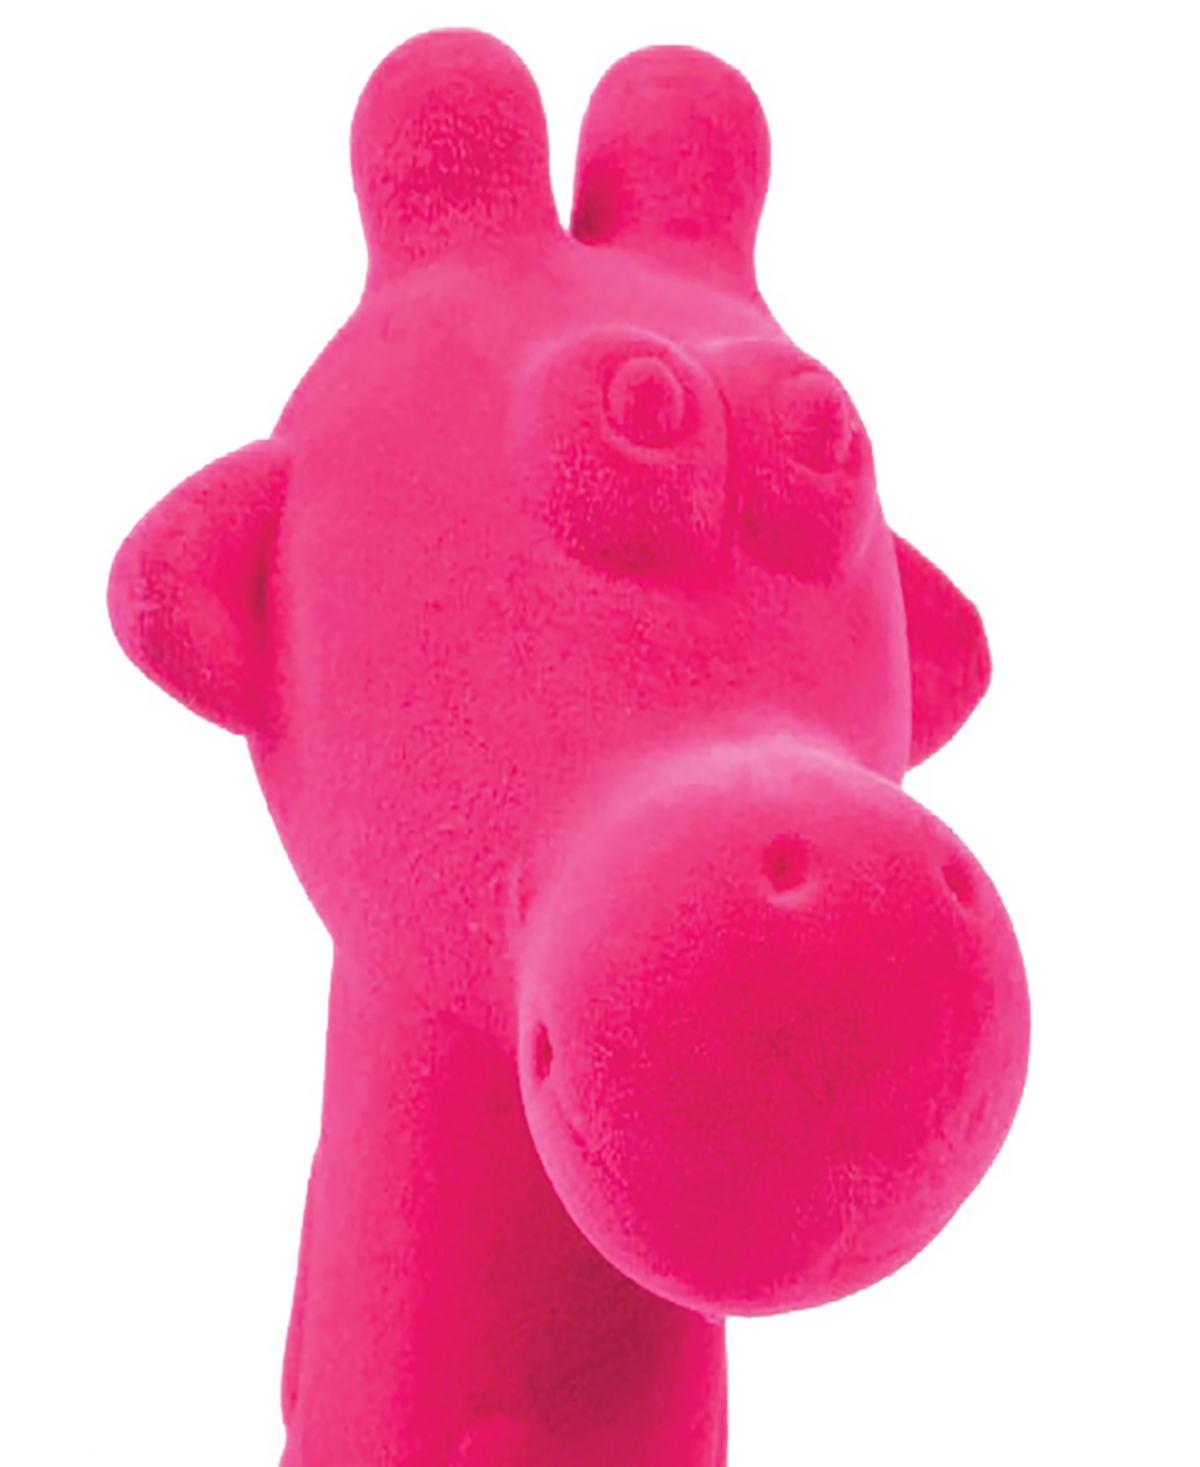 Shop Rubbabu Pink Giraffe Aniwheels Baby Toy In Multi